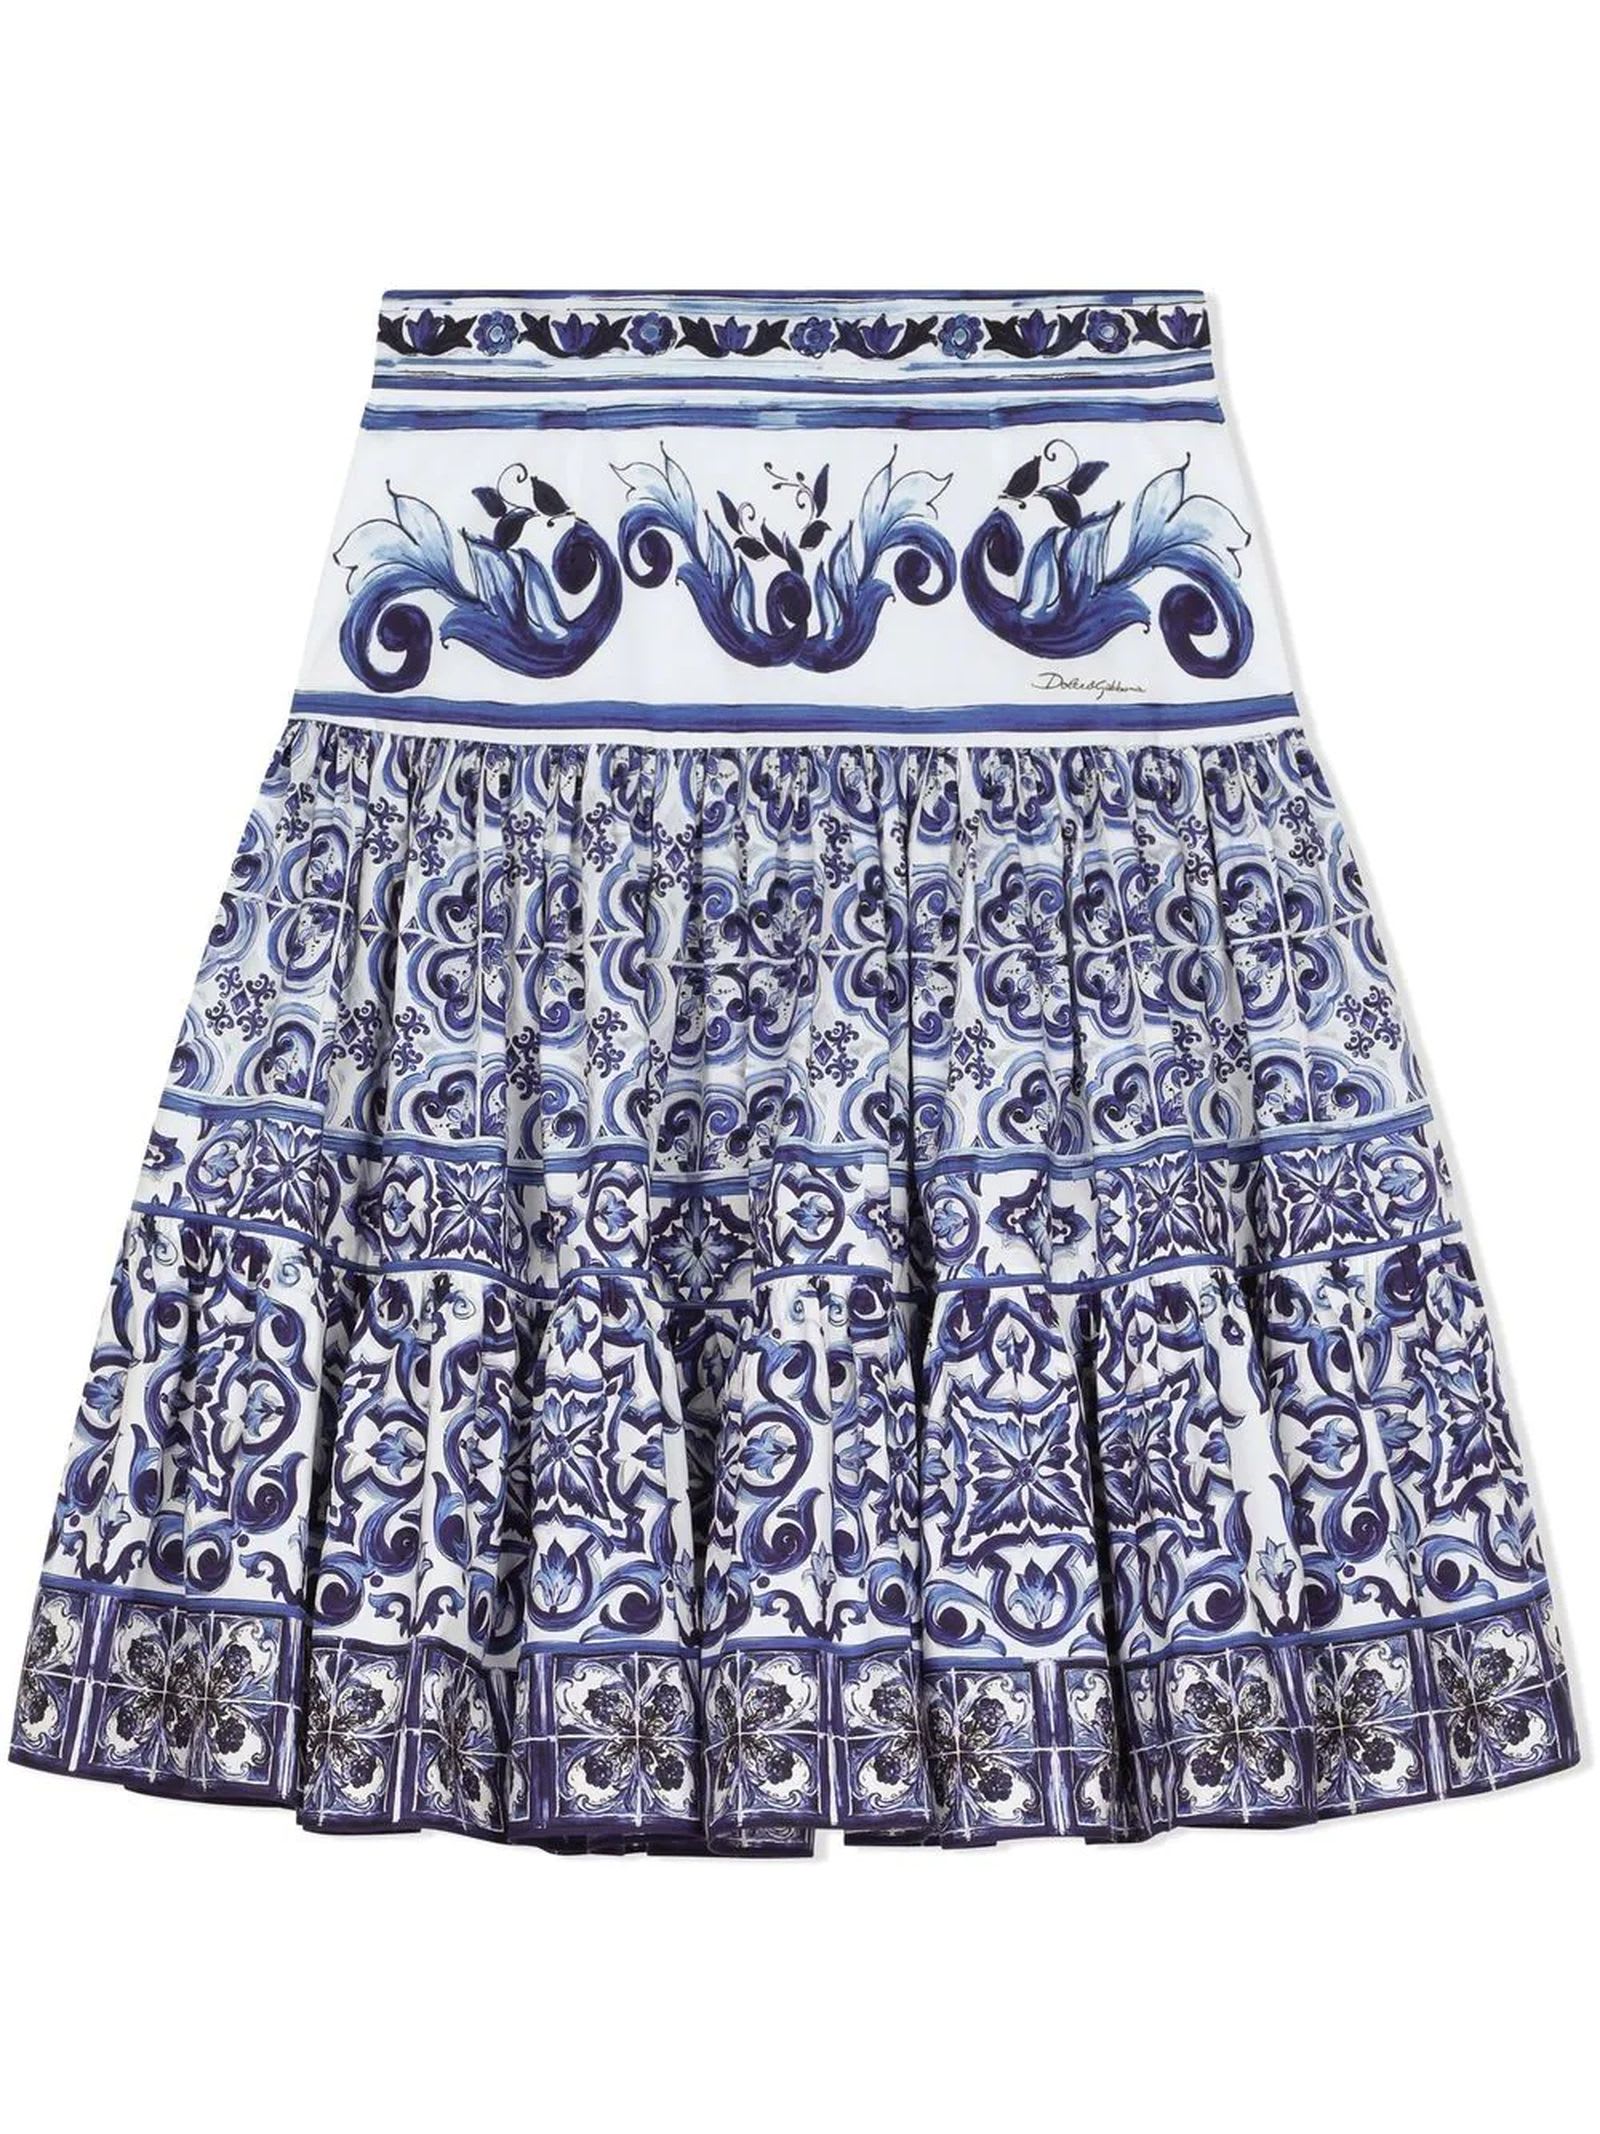 Dolce & Gabbana Blue Cotton Skirt